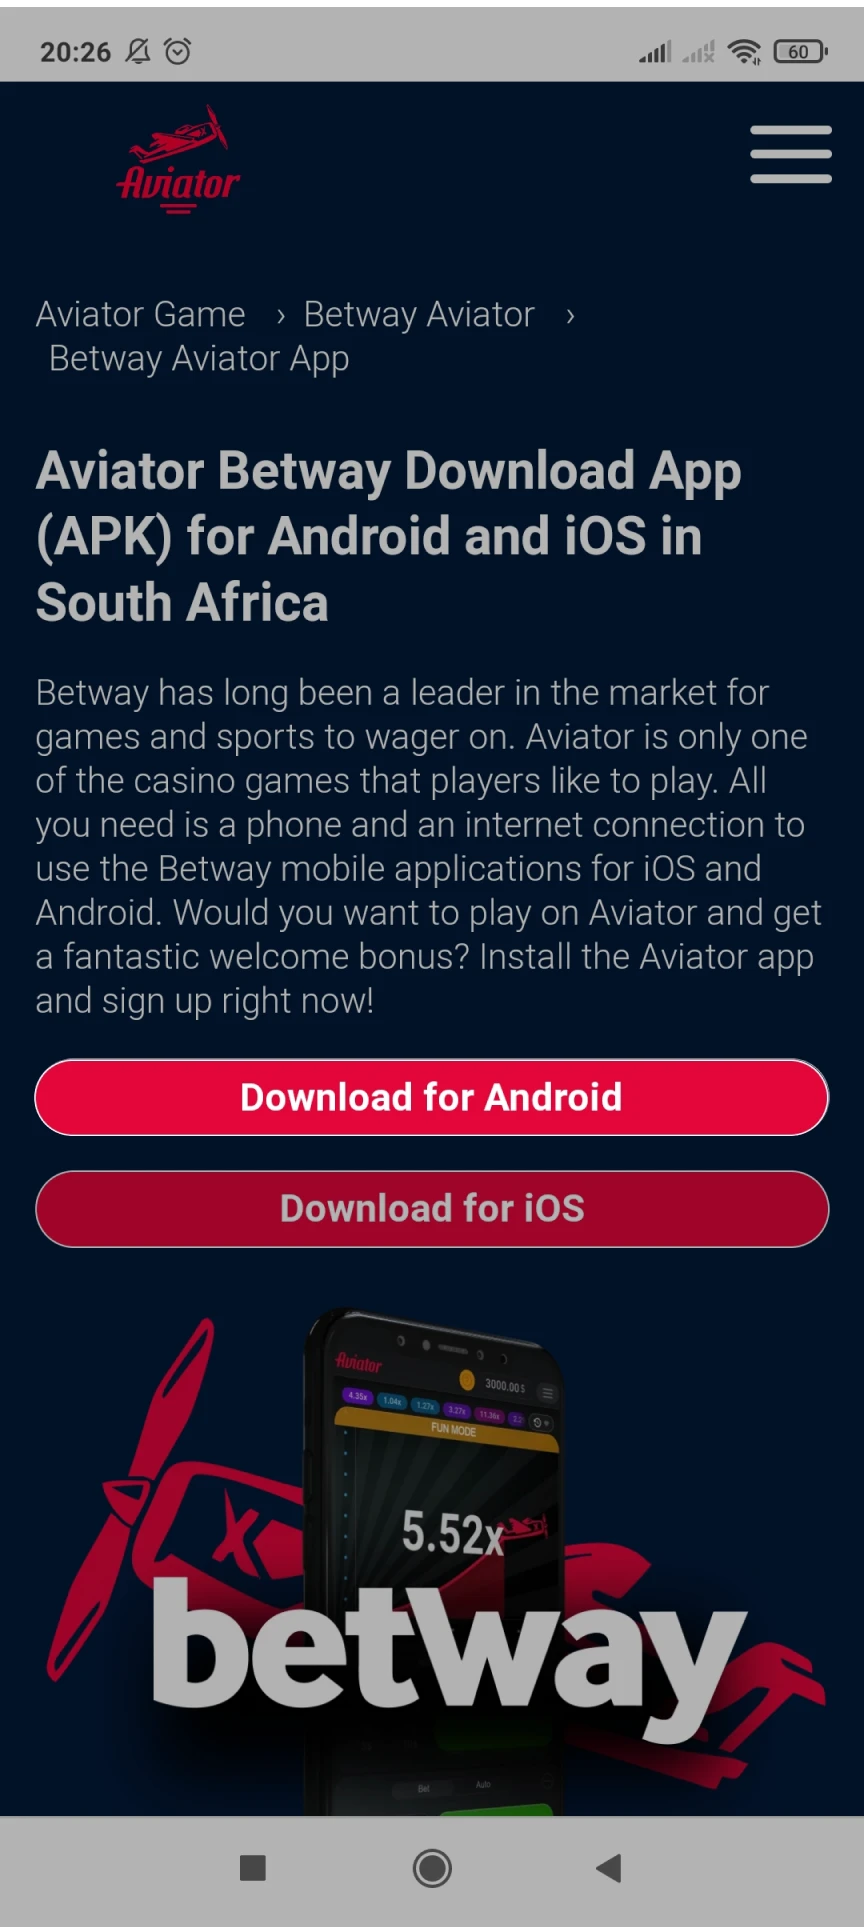 اتبع الرابط لتنزيل تطبيق Betway على نظام Android.